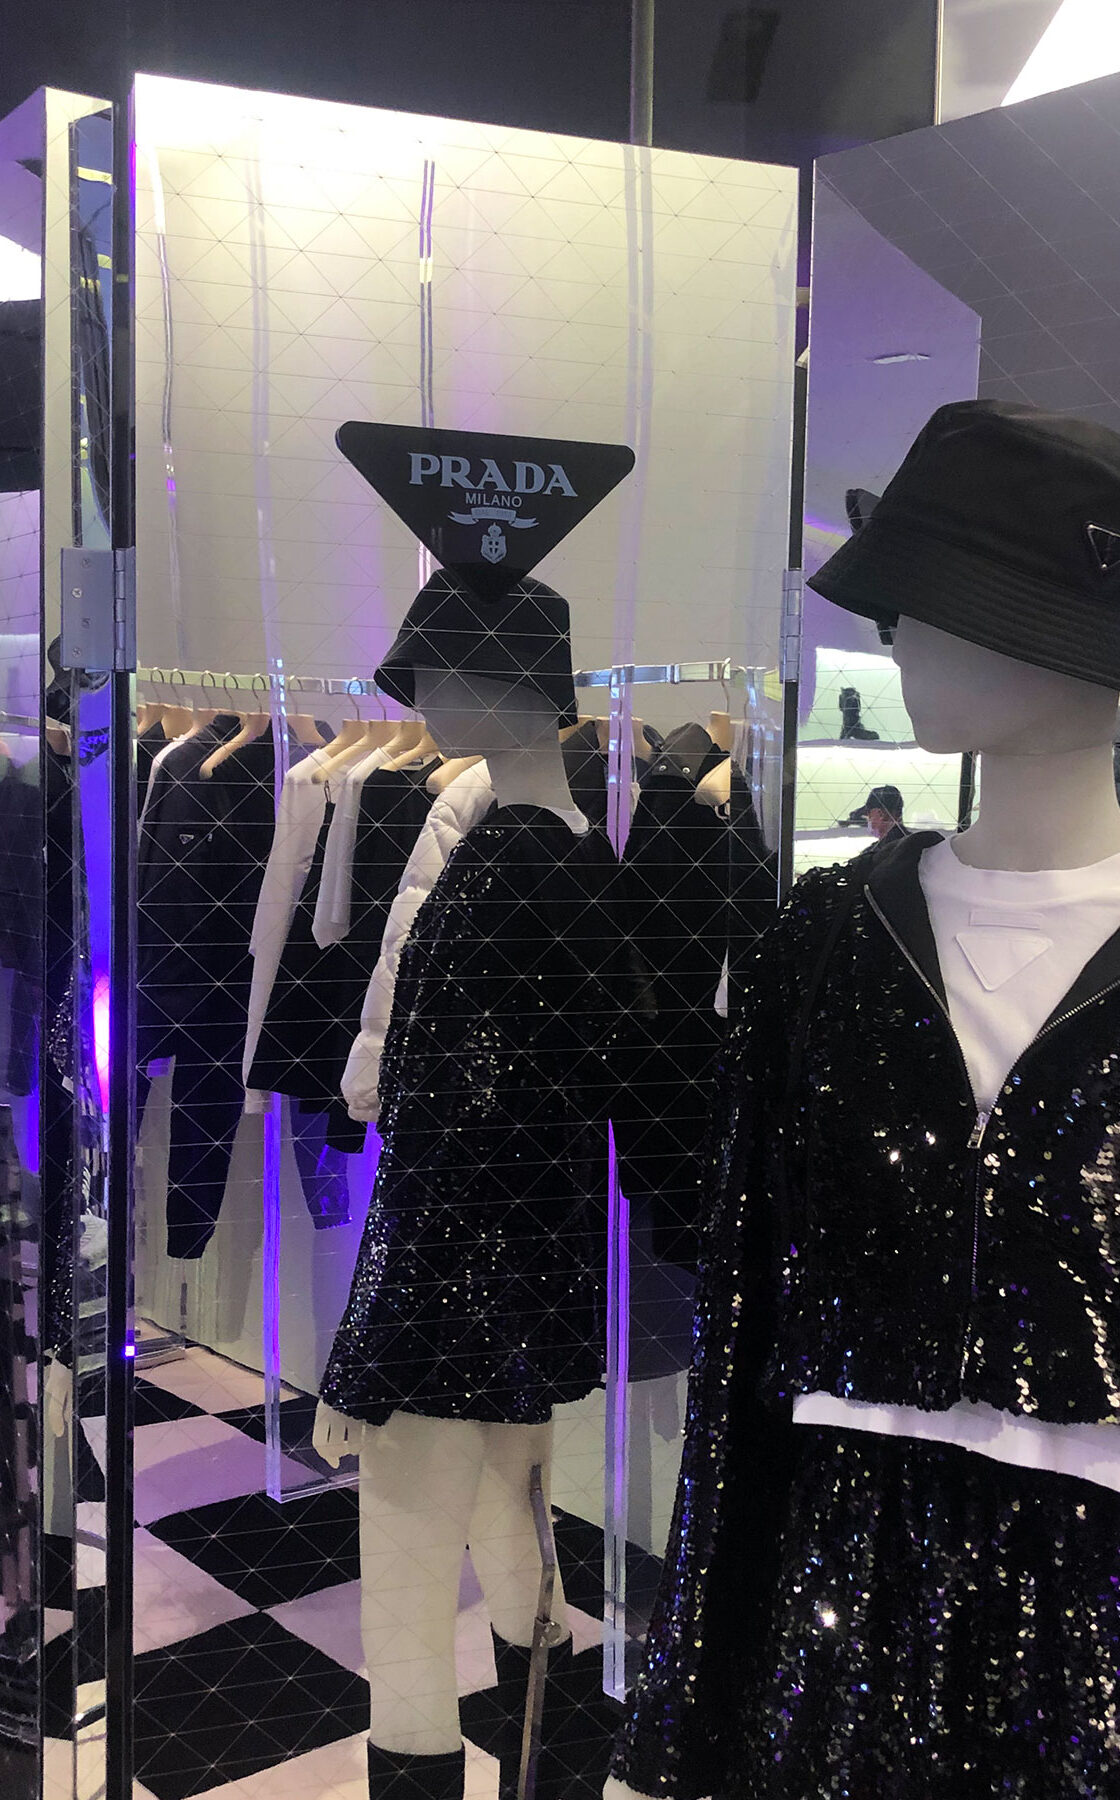 Prada – Retail Design